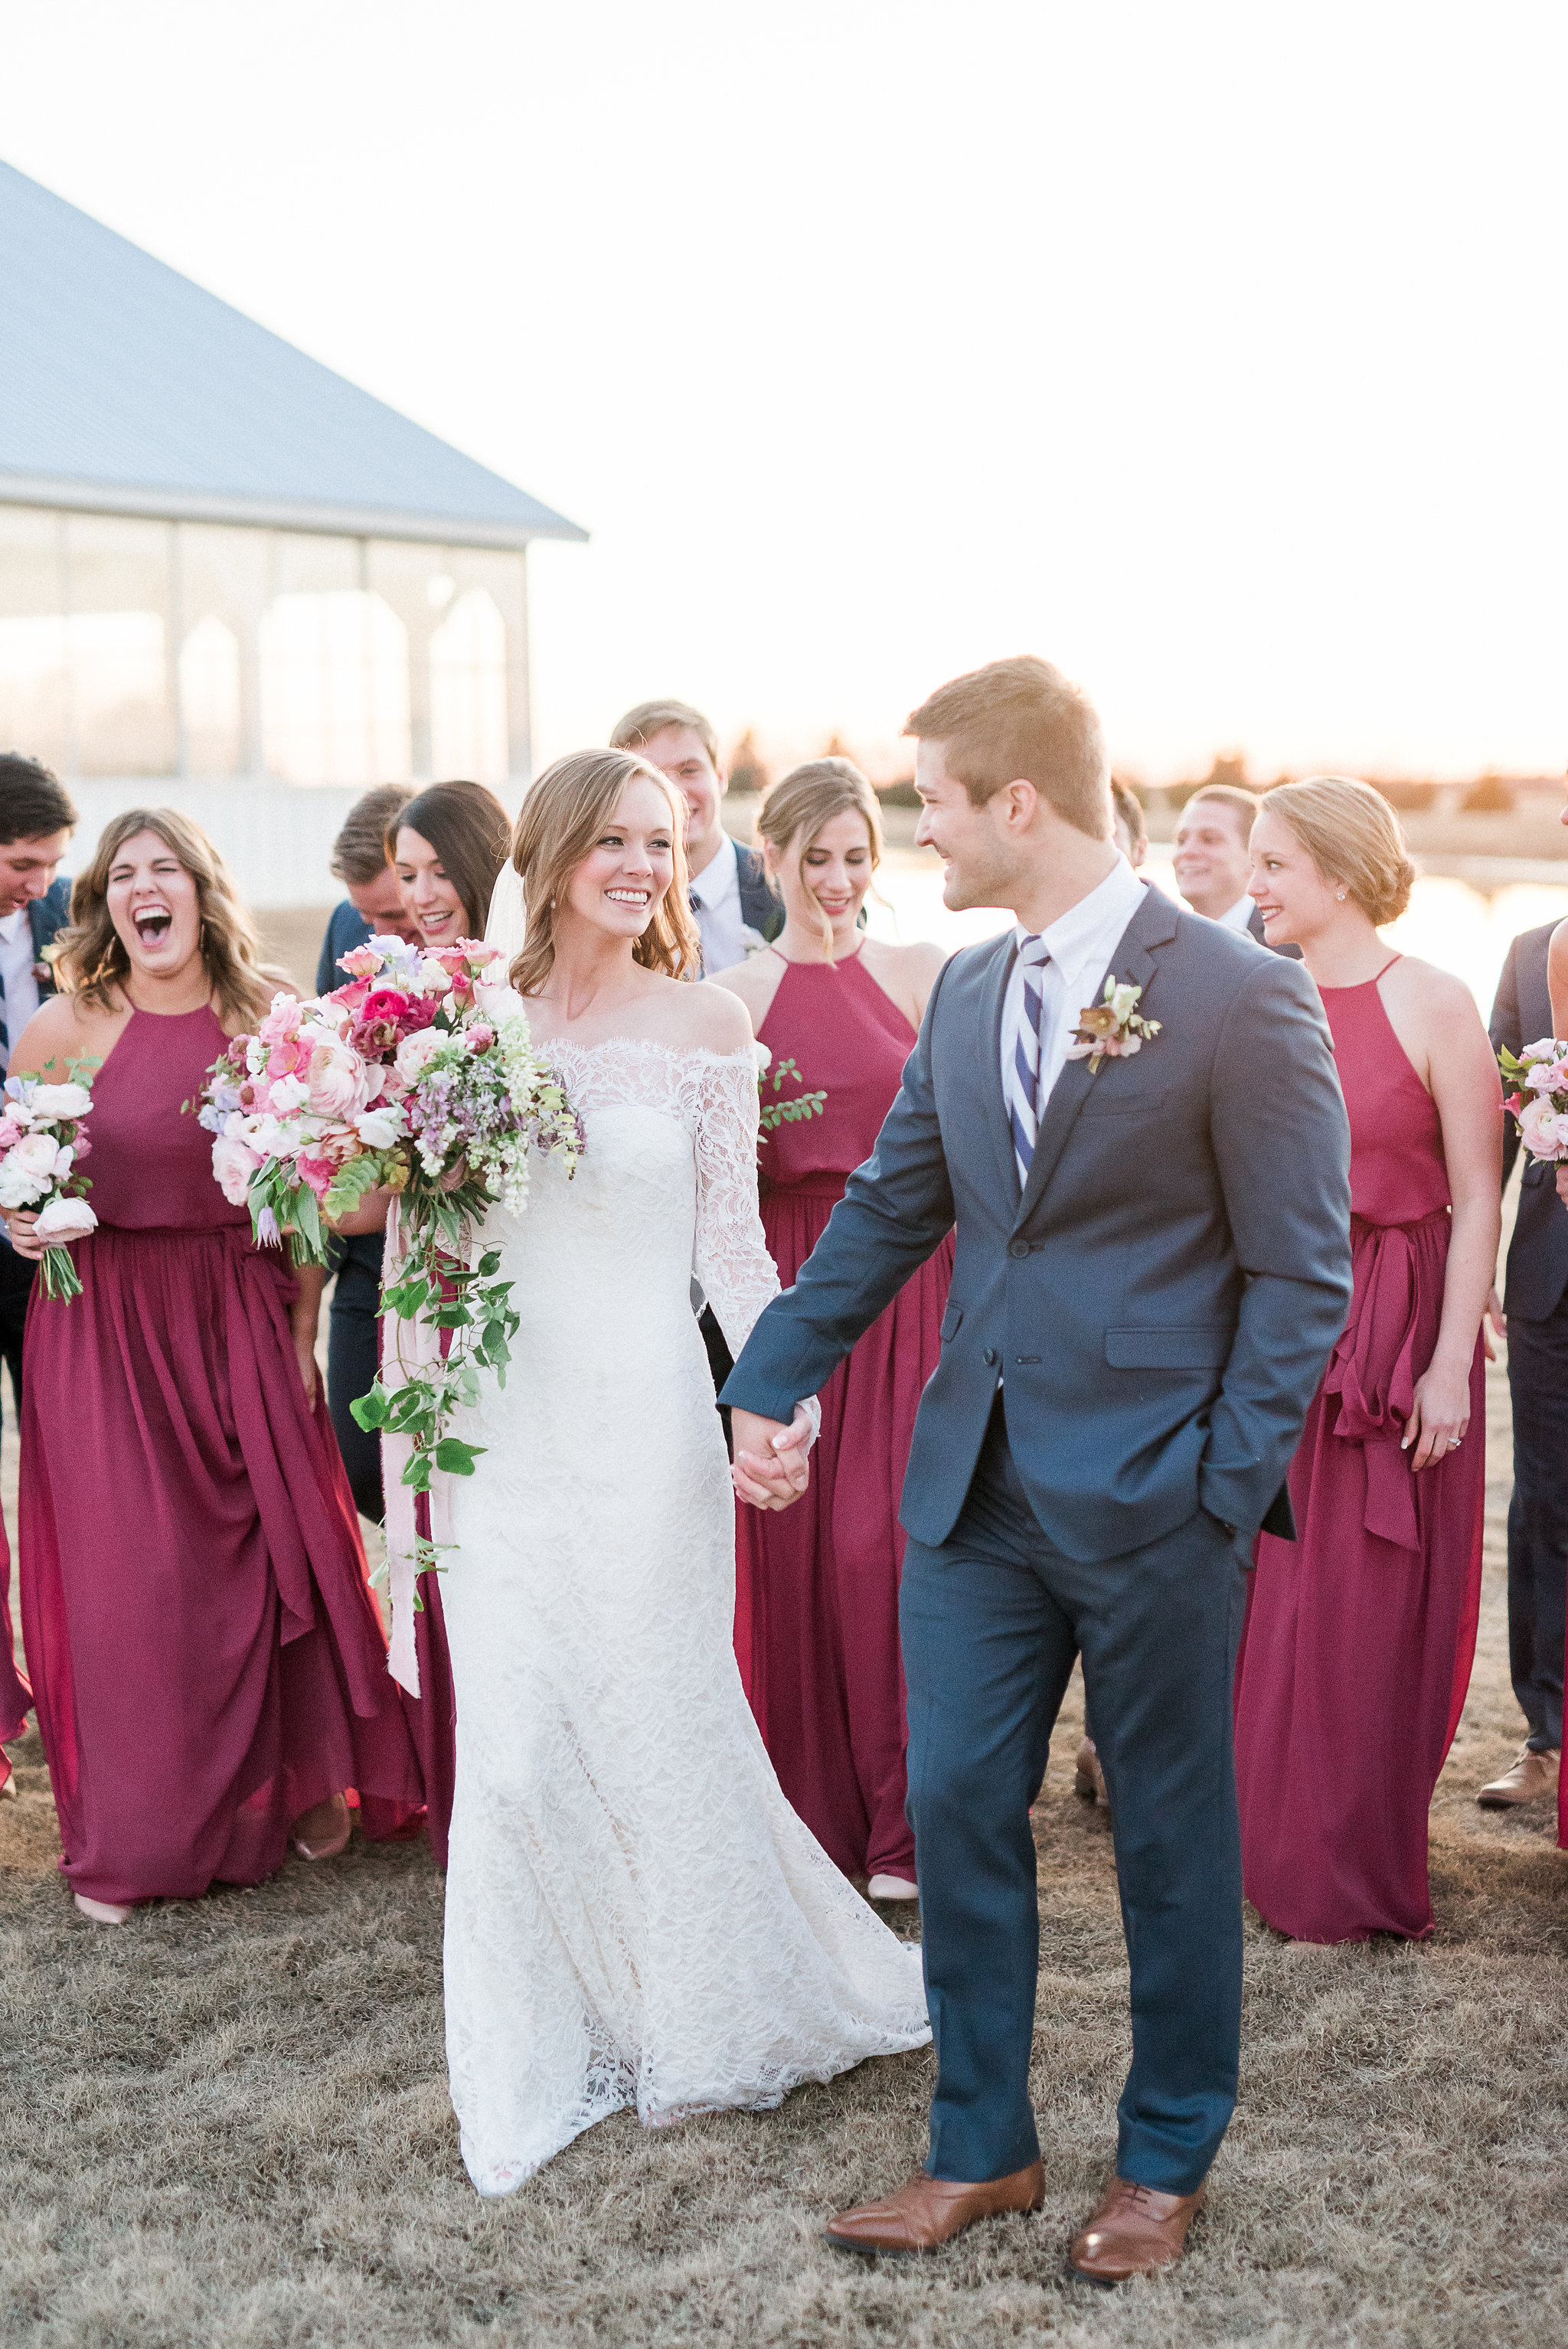 Vibrant Winter Wedding - Lindsey Brunkv